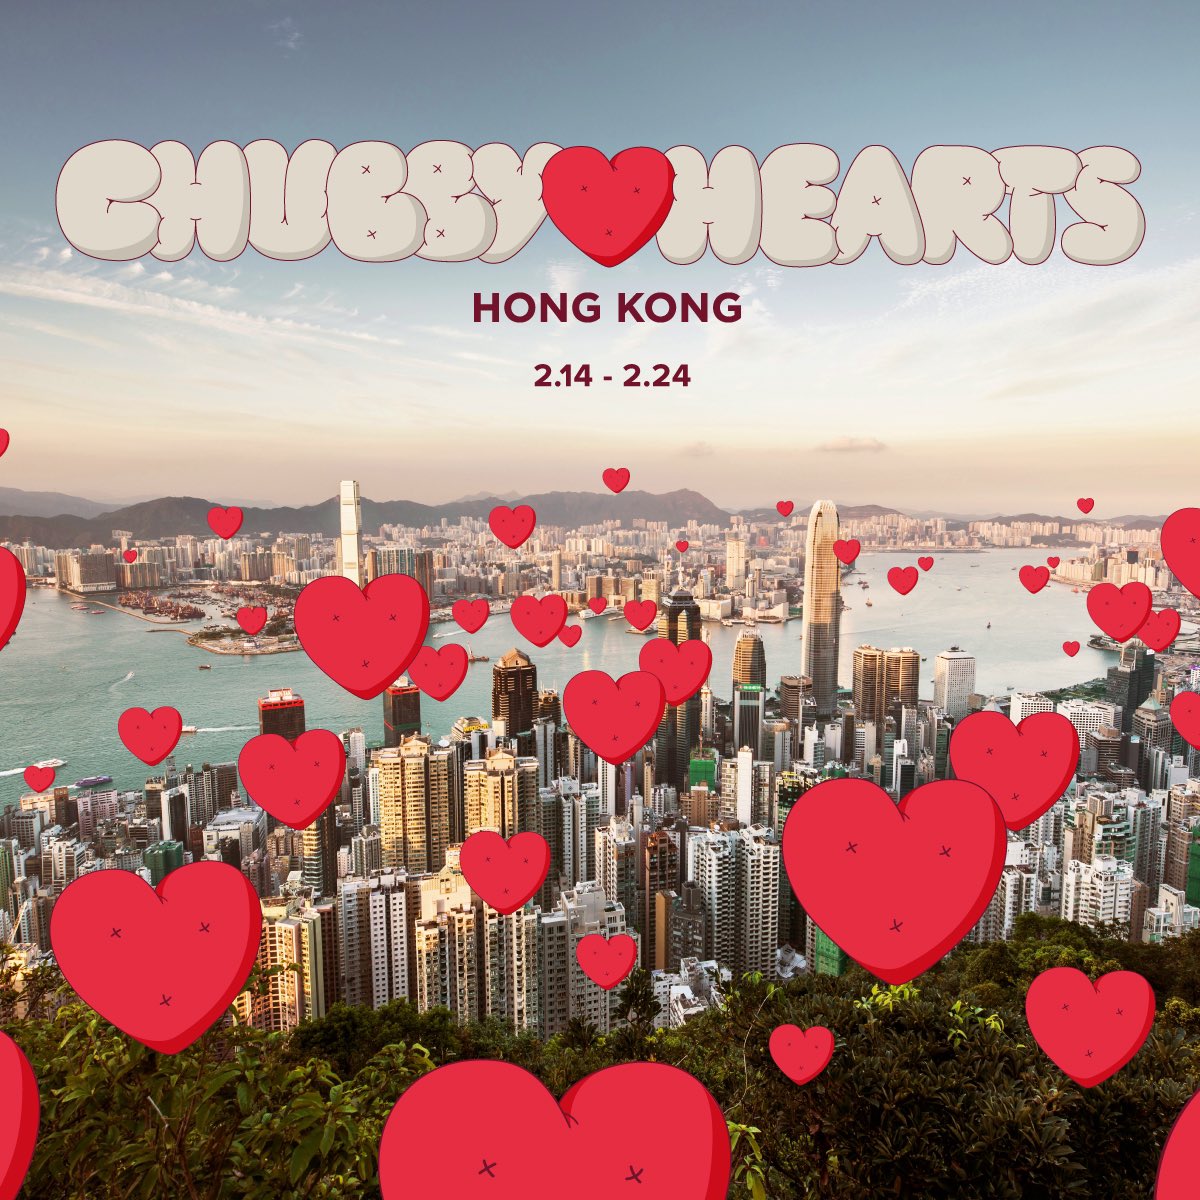 #LOFFICIELart :  #ChubbyHearts 首次登陸香港，巨型紅心將飄浮天際！這個巨型藝術裝置由著名設計師 Anya Hindmarch 構思，2018 年於倫敦首度登場。而今次展出的巨型紅心直徑達 12 米，比倫敦版本大四倍之多！特別於情人節至元宵節期間（2 月 14 至 24日）展出，於中環皇后像廣場花園登場。